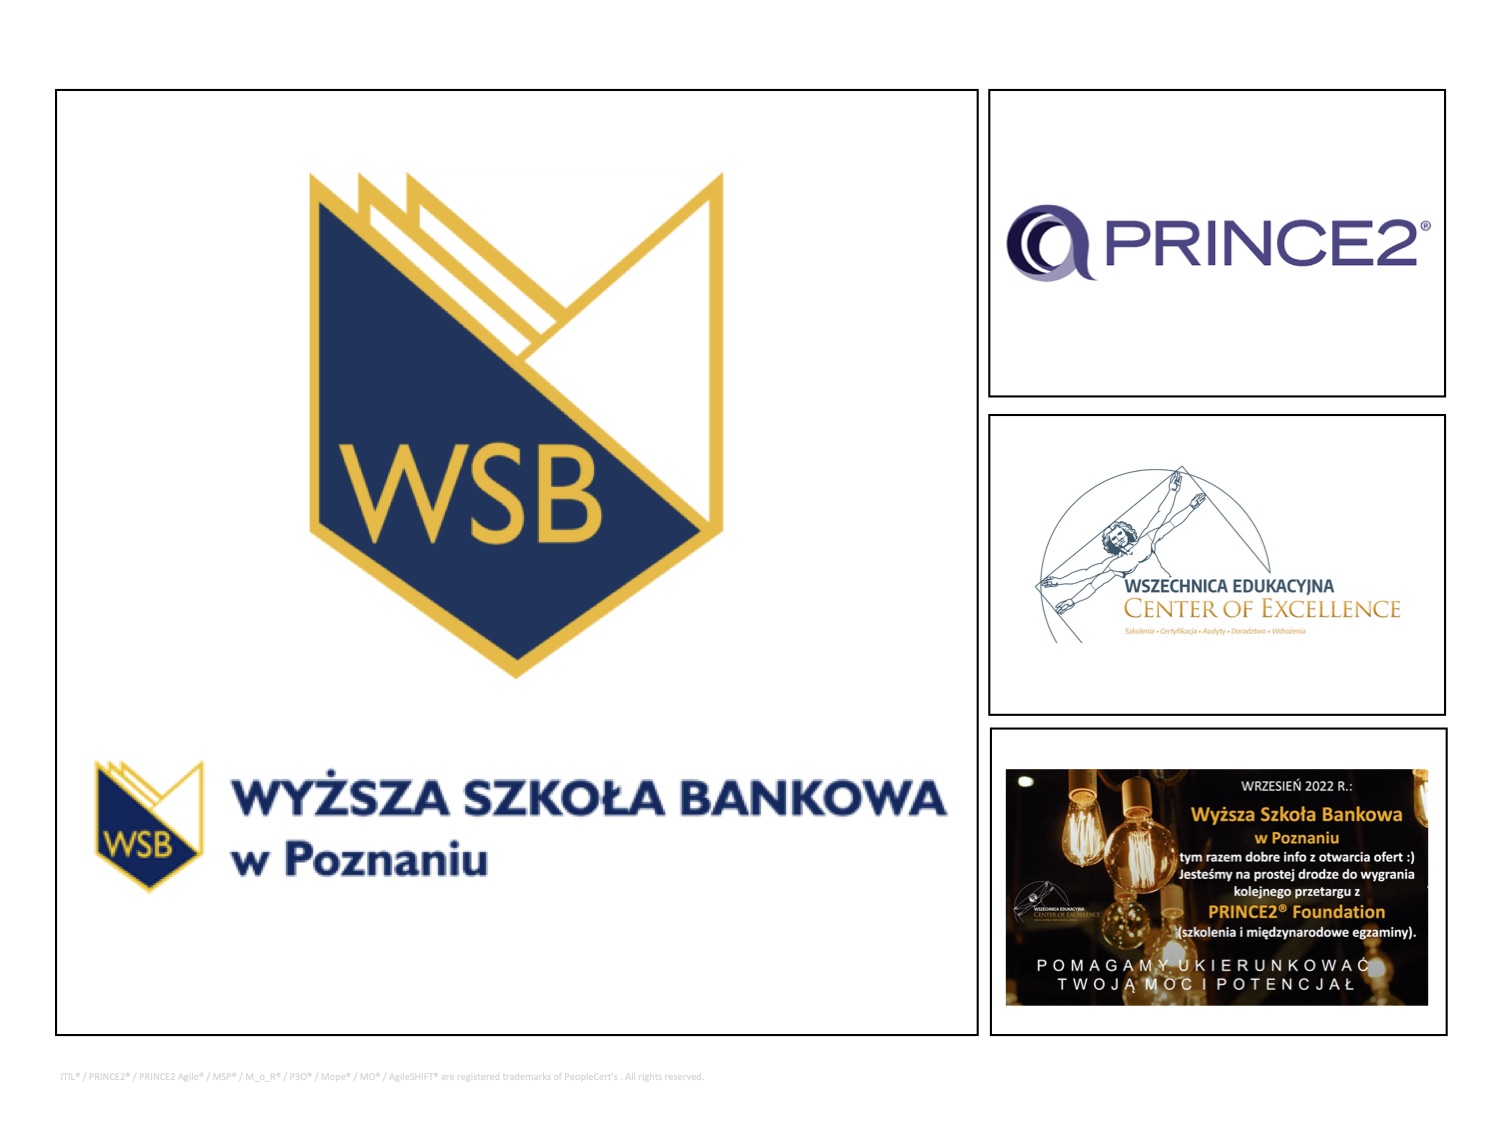 WSB - PRINCE2- Wszechnnica Edukacyjna.jpg